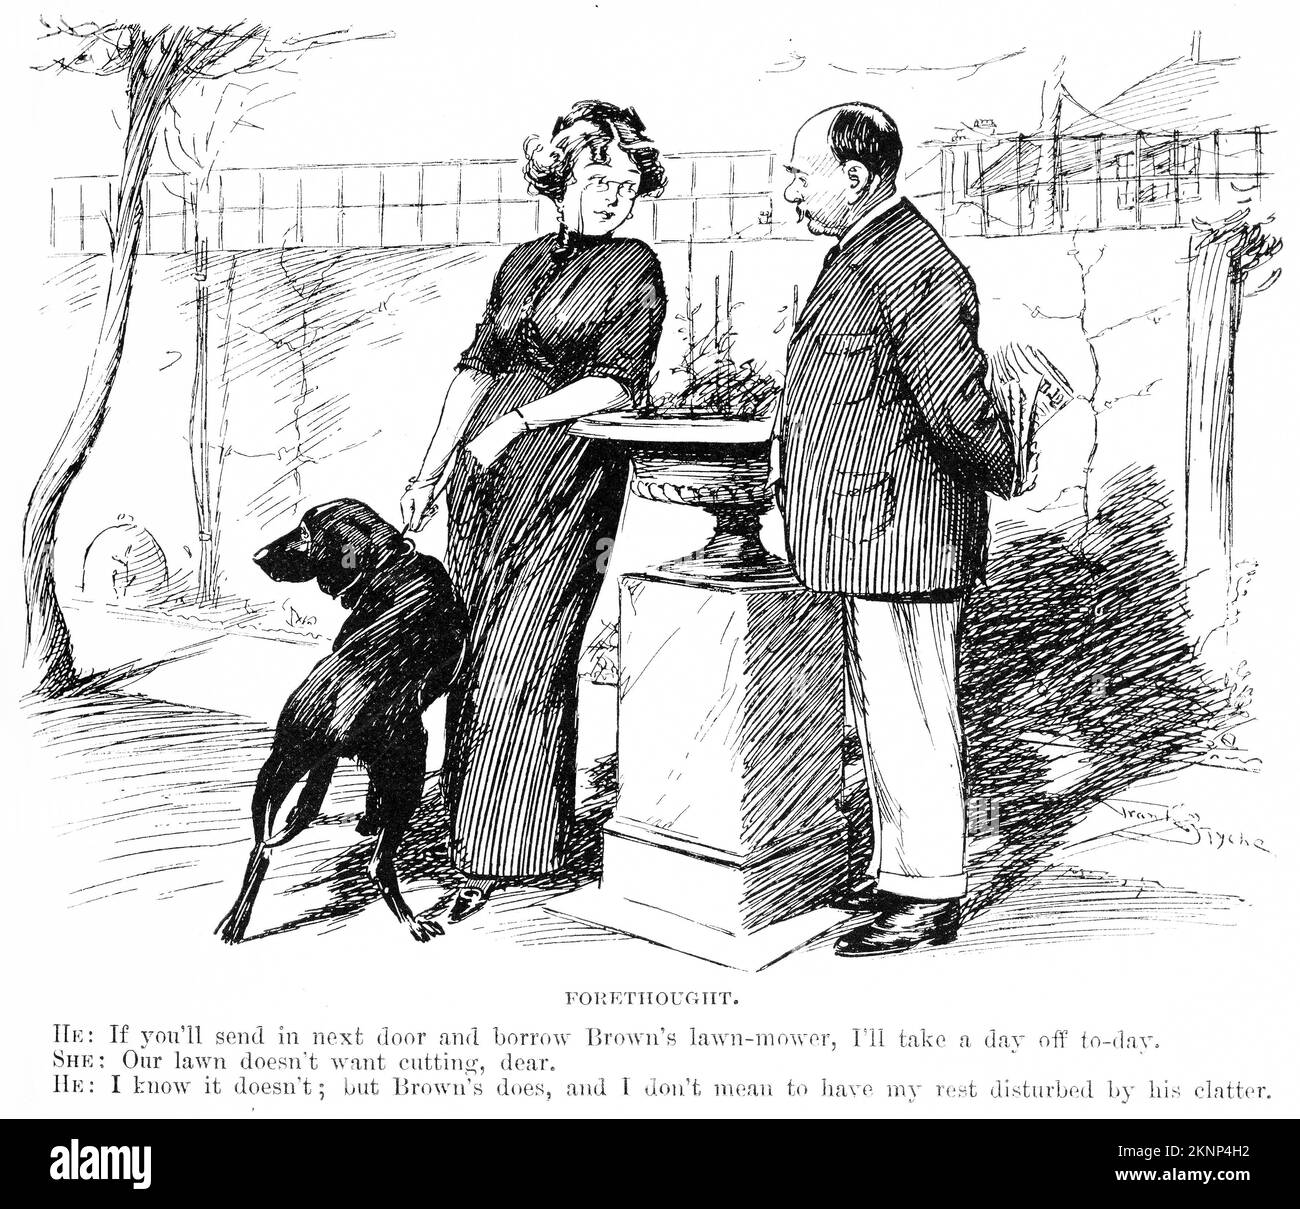 Gravure d'un couple marié parlant de la façon d'obtenir un repos de leurs voisins bruyants, vers 1890 Banque D'Images